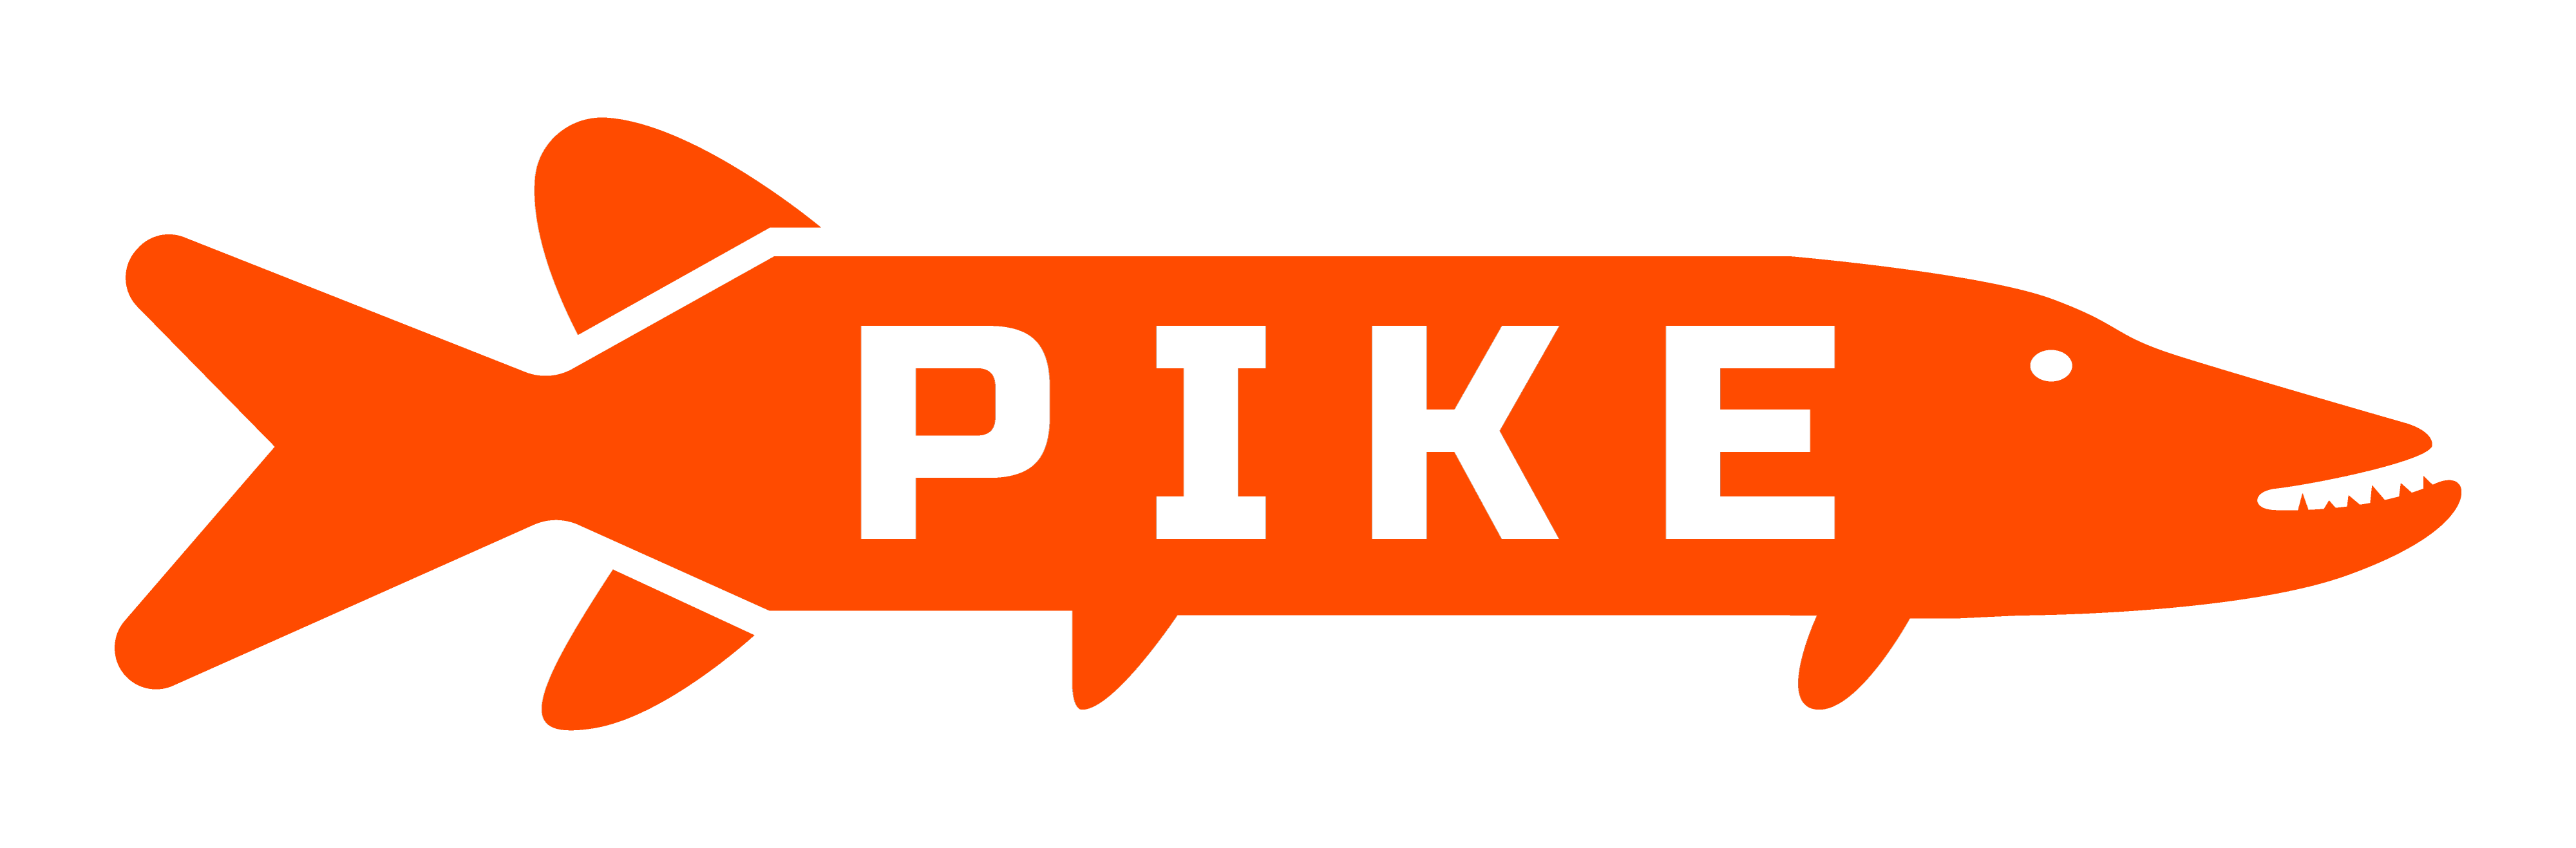 Логотип Pike